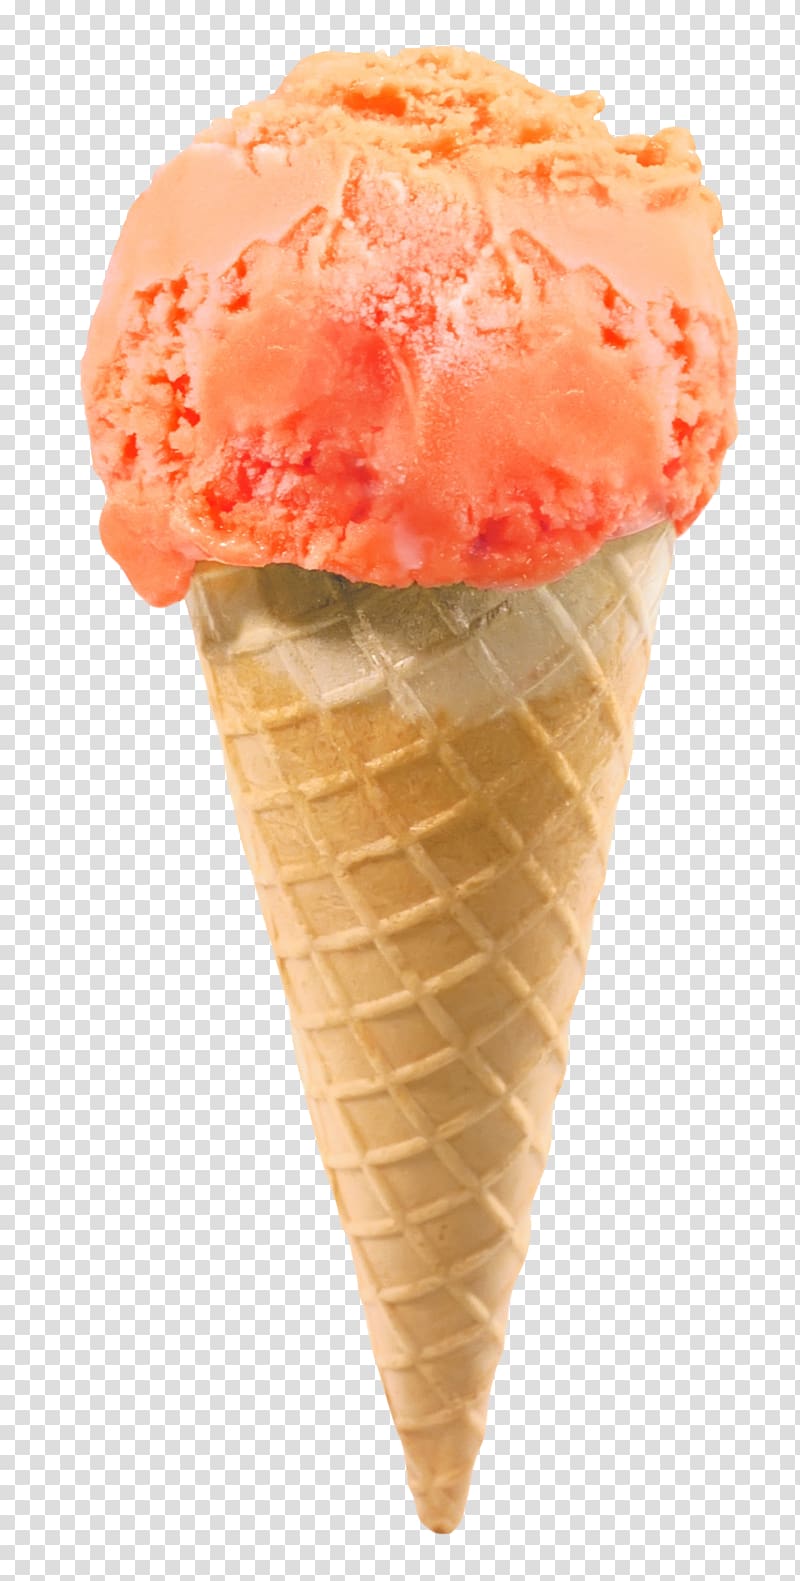 orange ice cream on cone, Ice cream cone Chocolate ice cream Waffle, Ice Cream Cone transparent background PNG clipart